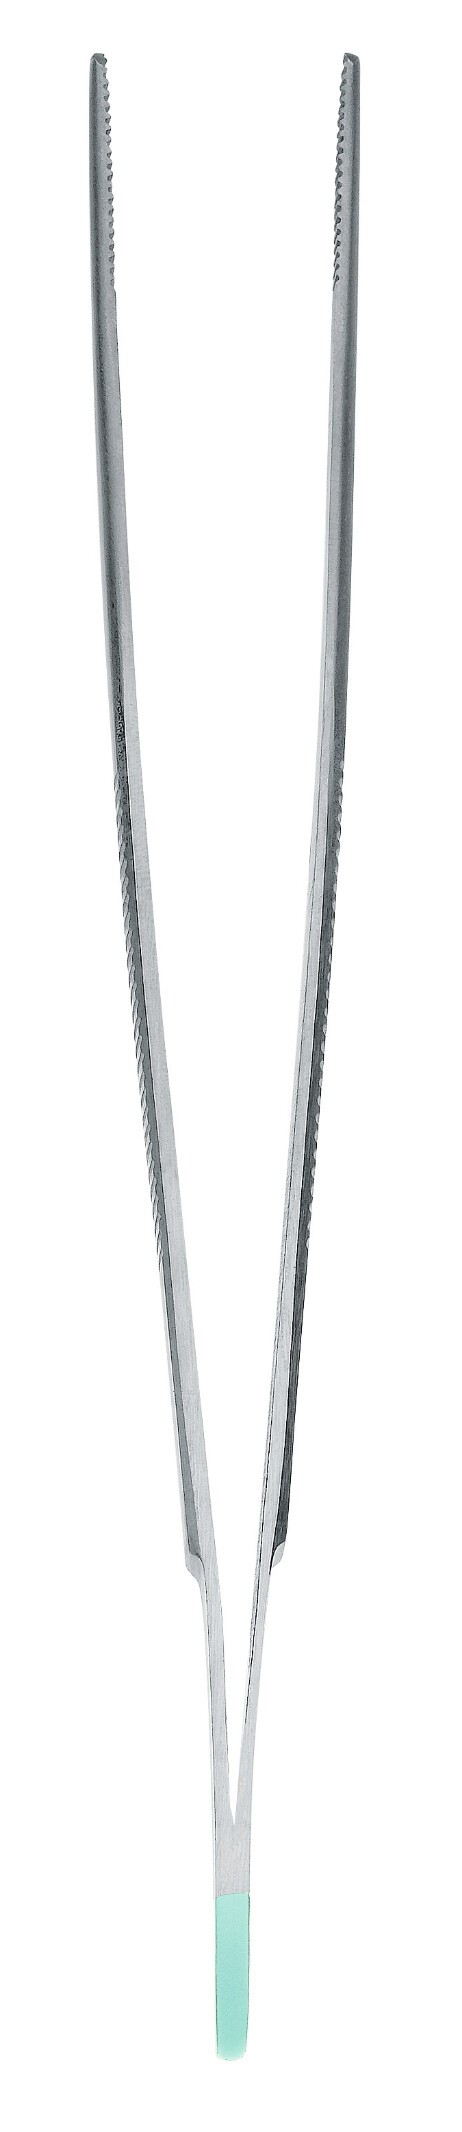 Sproeteninstrument standaard pincet anatomisch recht 14cm